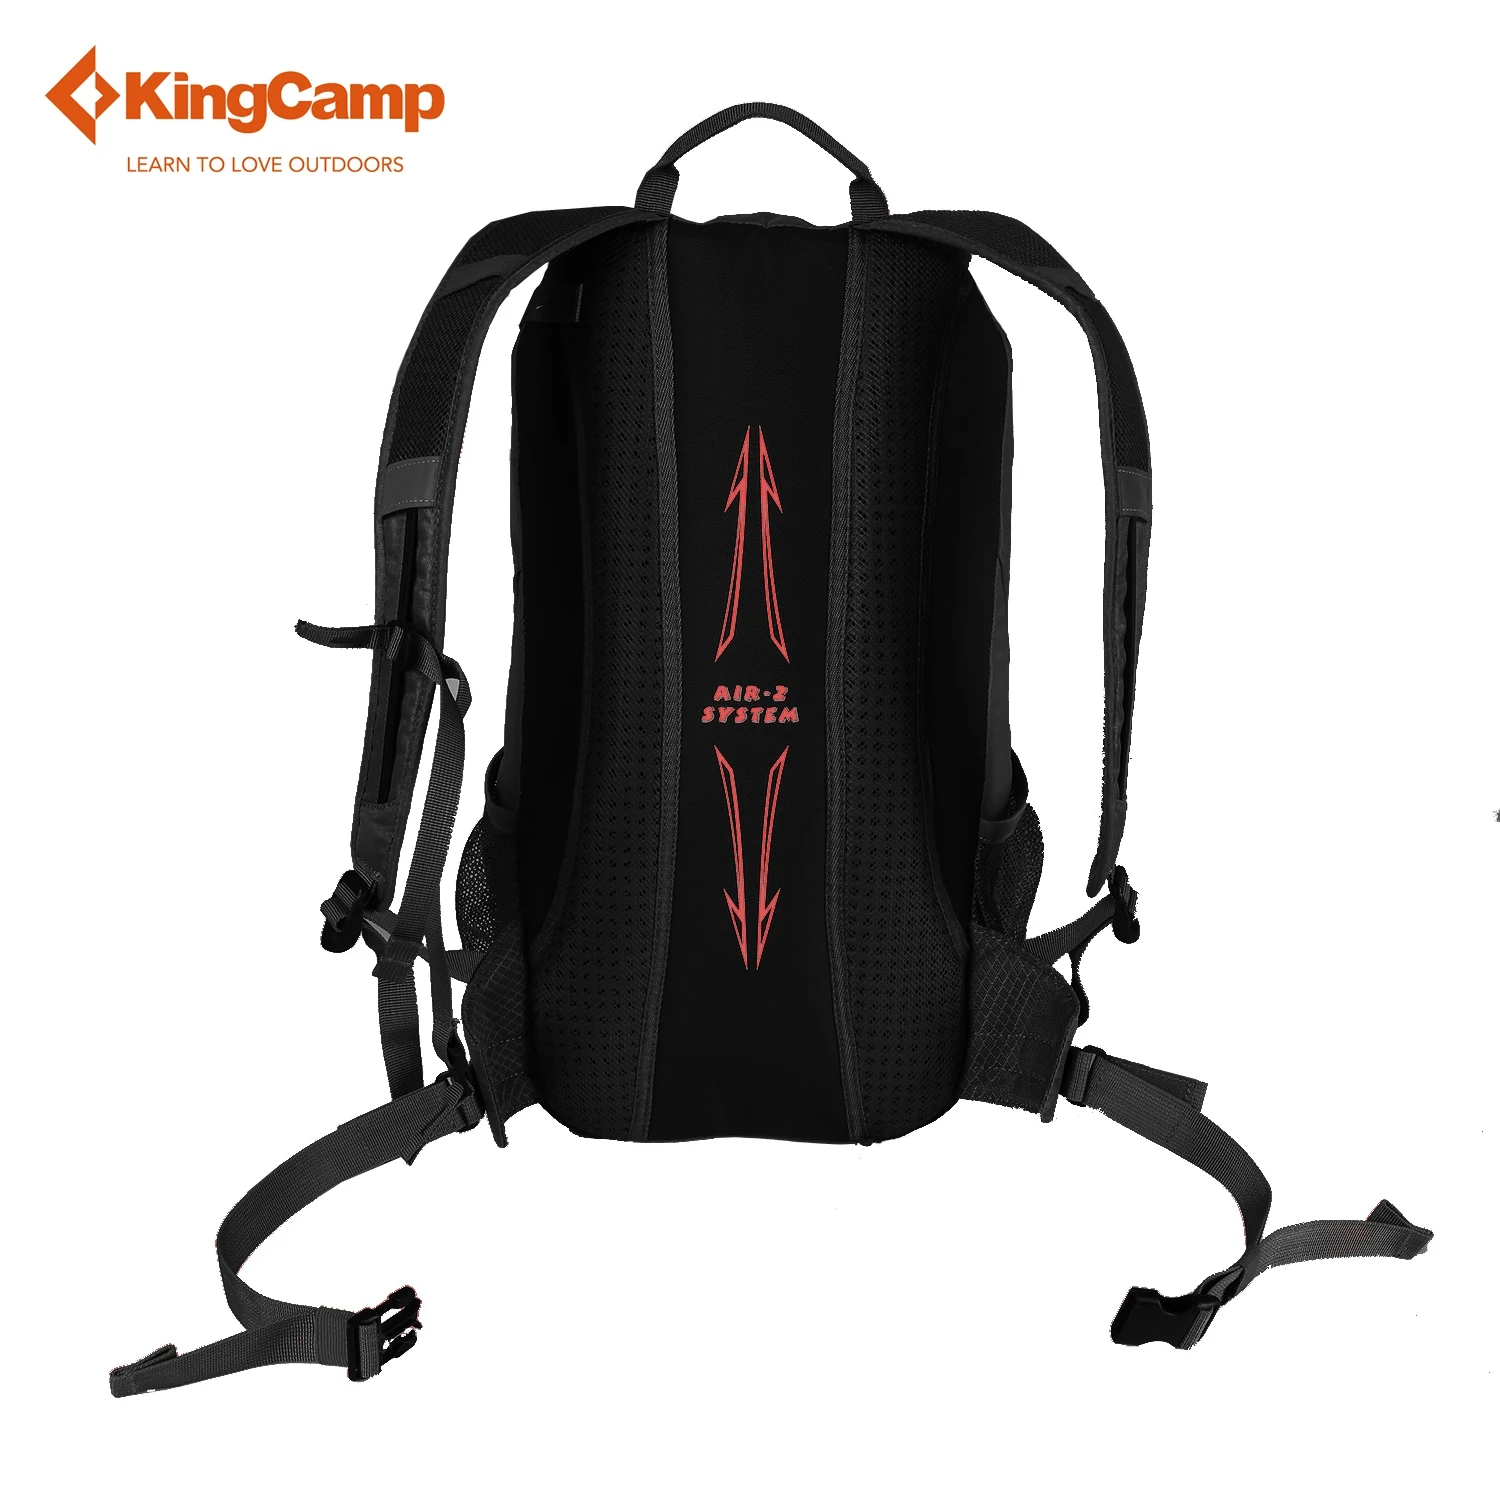 KingCamp походная сумка 25л походный рюкзак альпинистская сумка Регулируемый ремень рюкзак для кемпинга путешествия три цвета